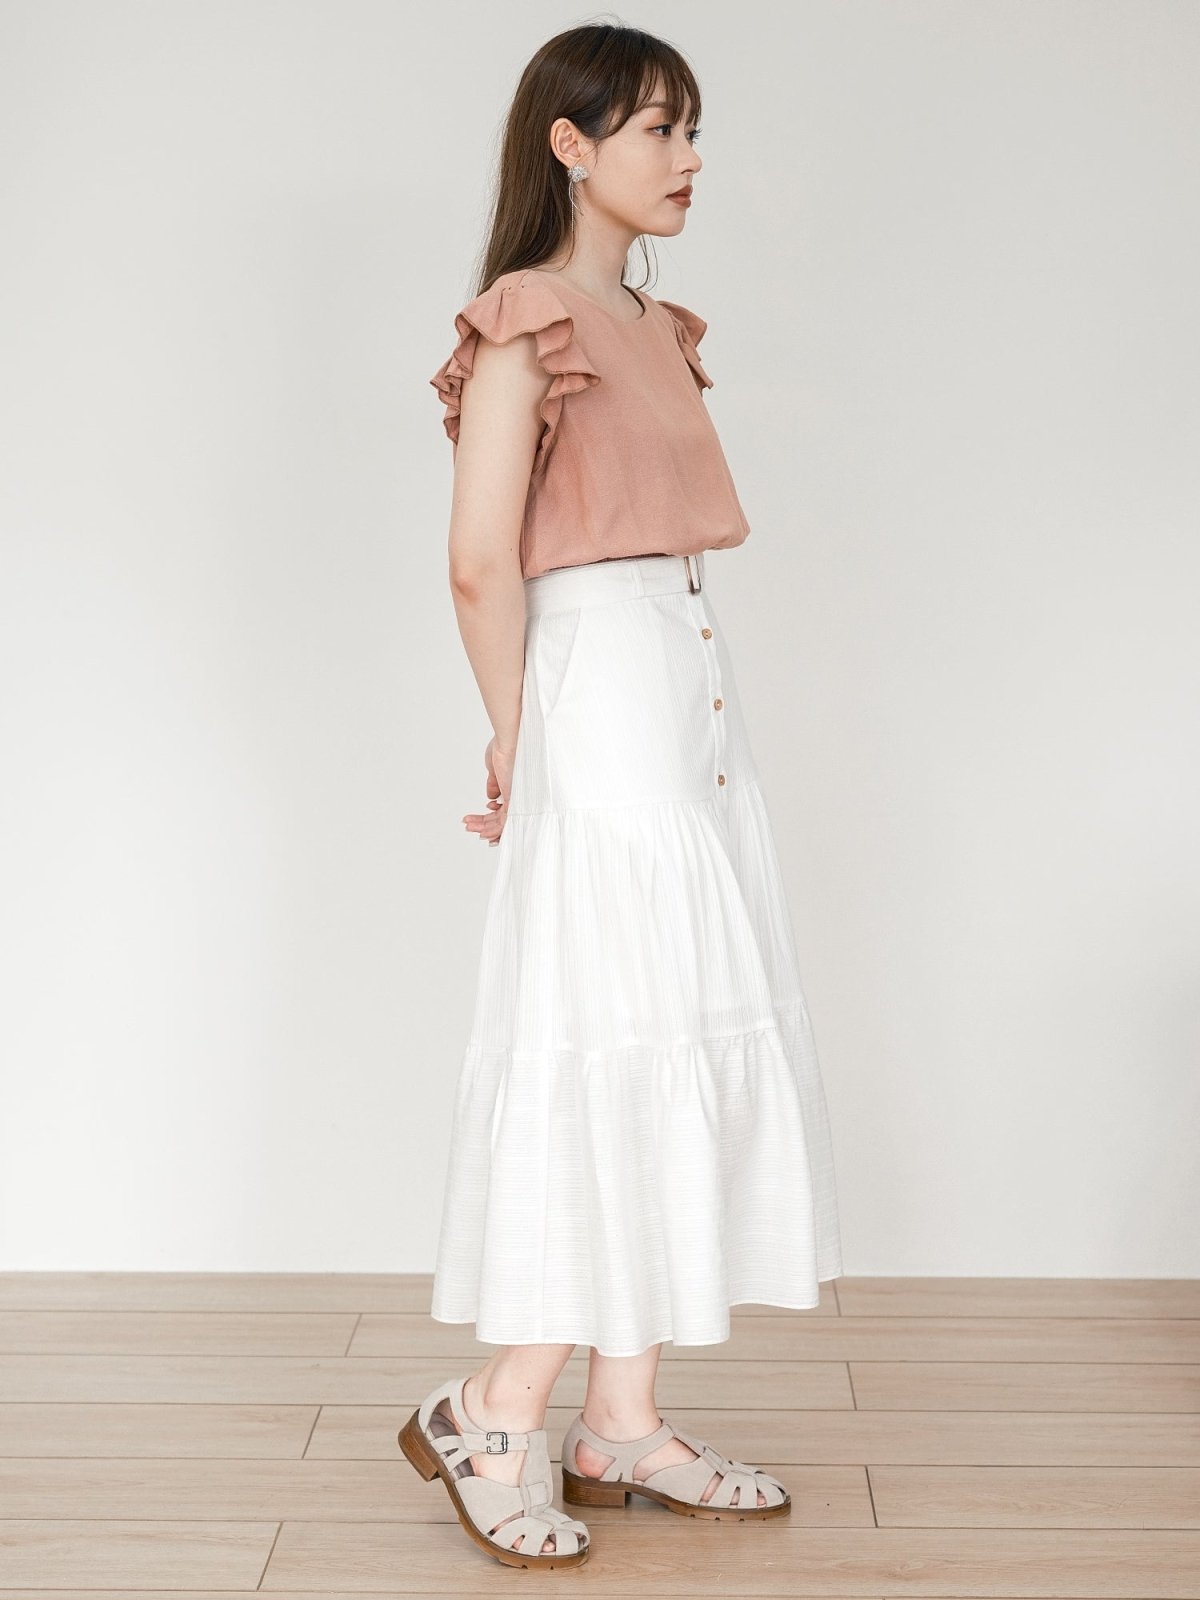 Brooklyn Belted Tiered Midi Skirt - DAG-DD0193-23IvoryF - Mochi Ivory - F - D'ZAGE Designs